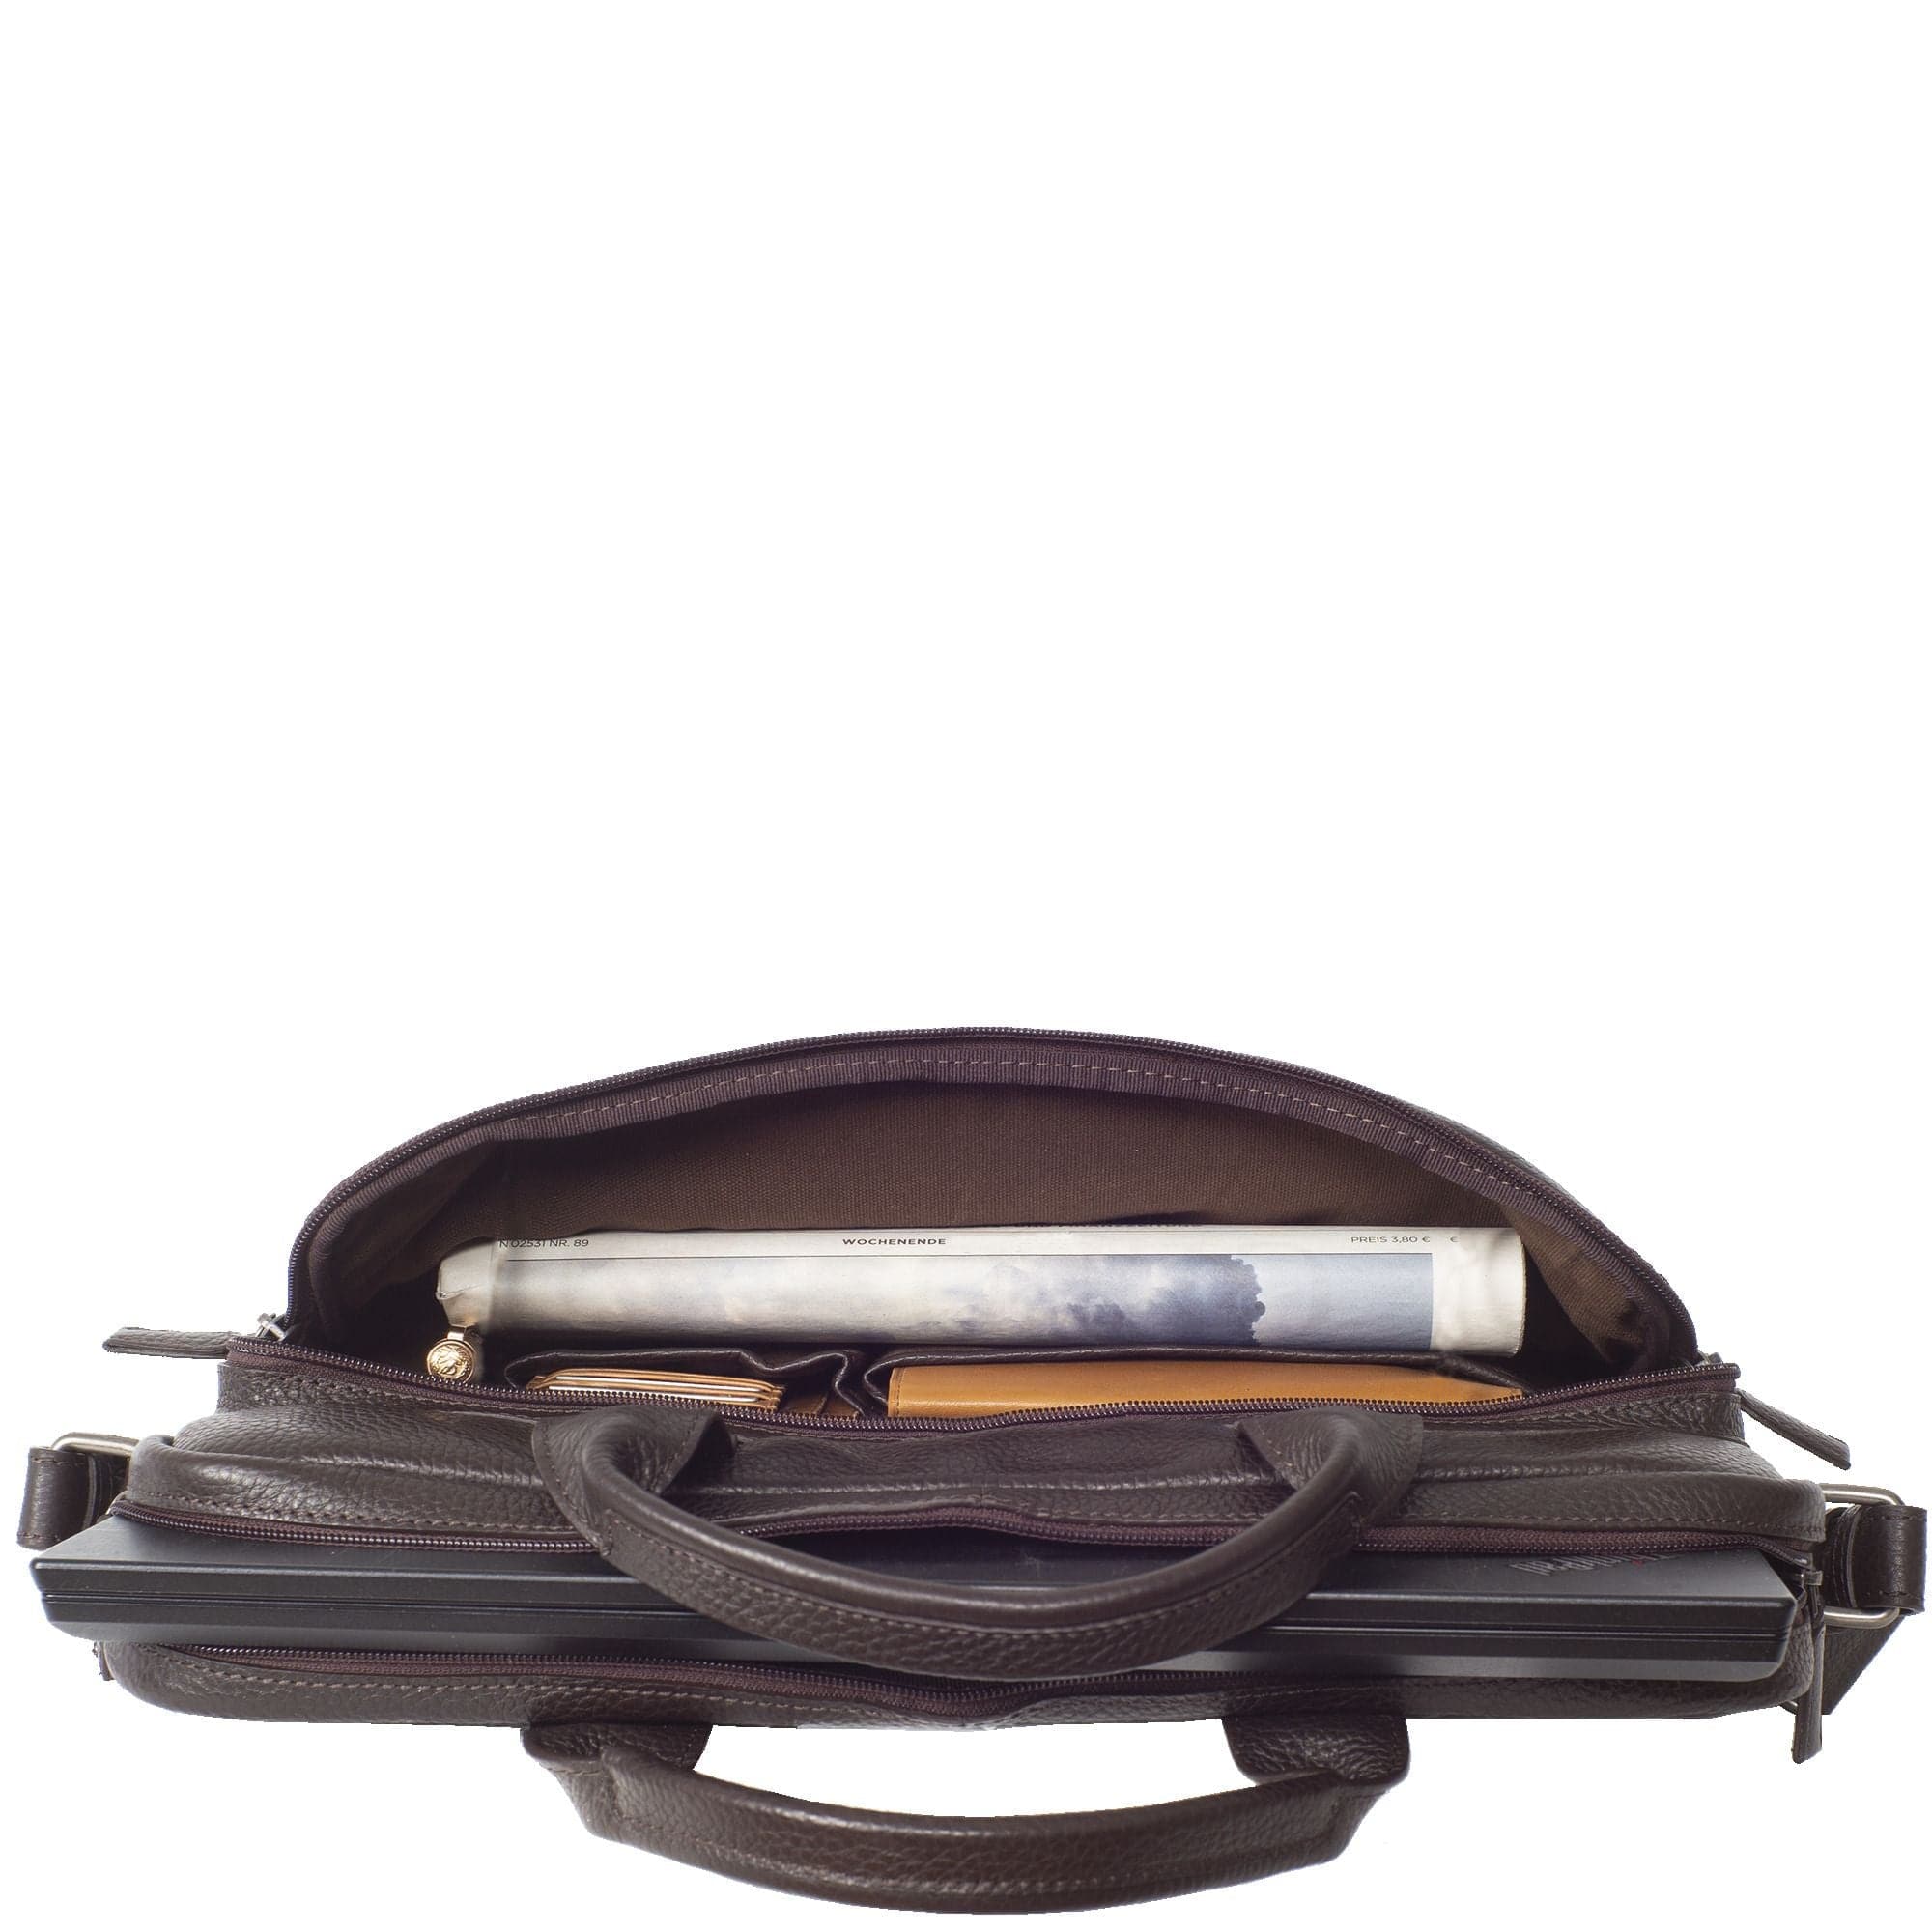 Businesstasche Laptoptasche 15 Zoll geprägtes Leder braun Vortasche mit Boden